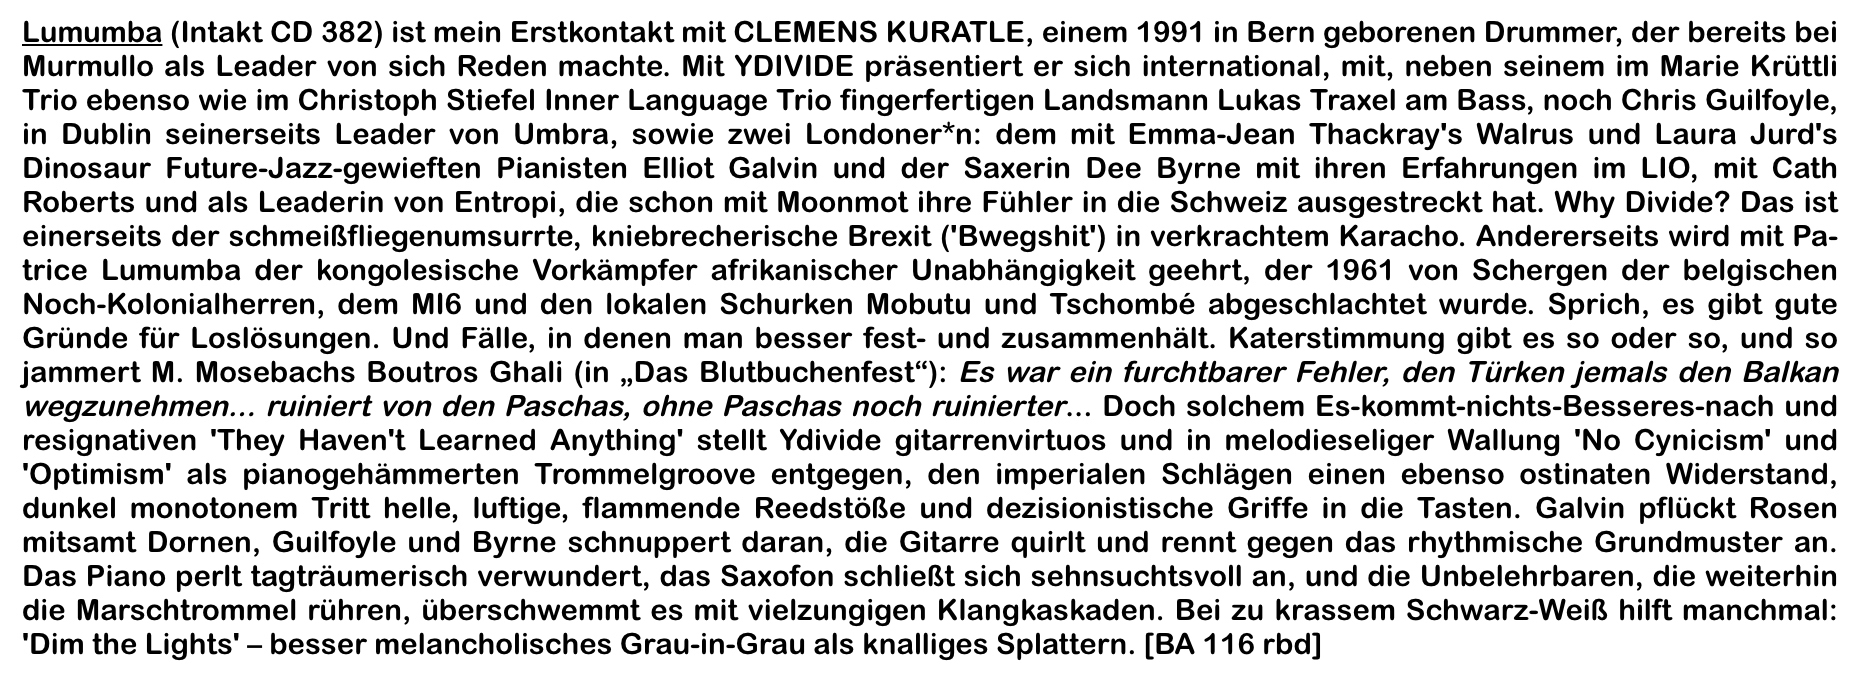 Lumumba (Intakt CD 382) ist mein Erstkontakt mit CLEMENS KURATLE, einem 1991 in Bern geborenen Drummer, der bereits bei Murmullo als Leader von sich Reden machte.